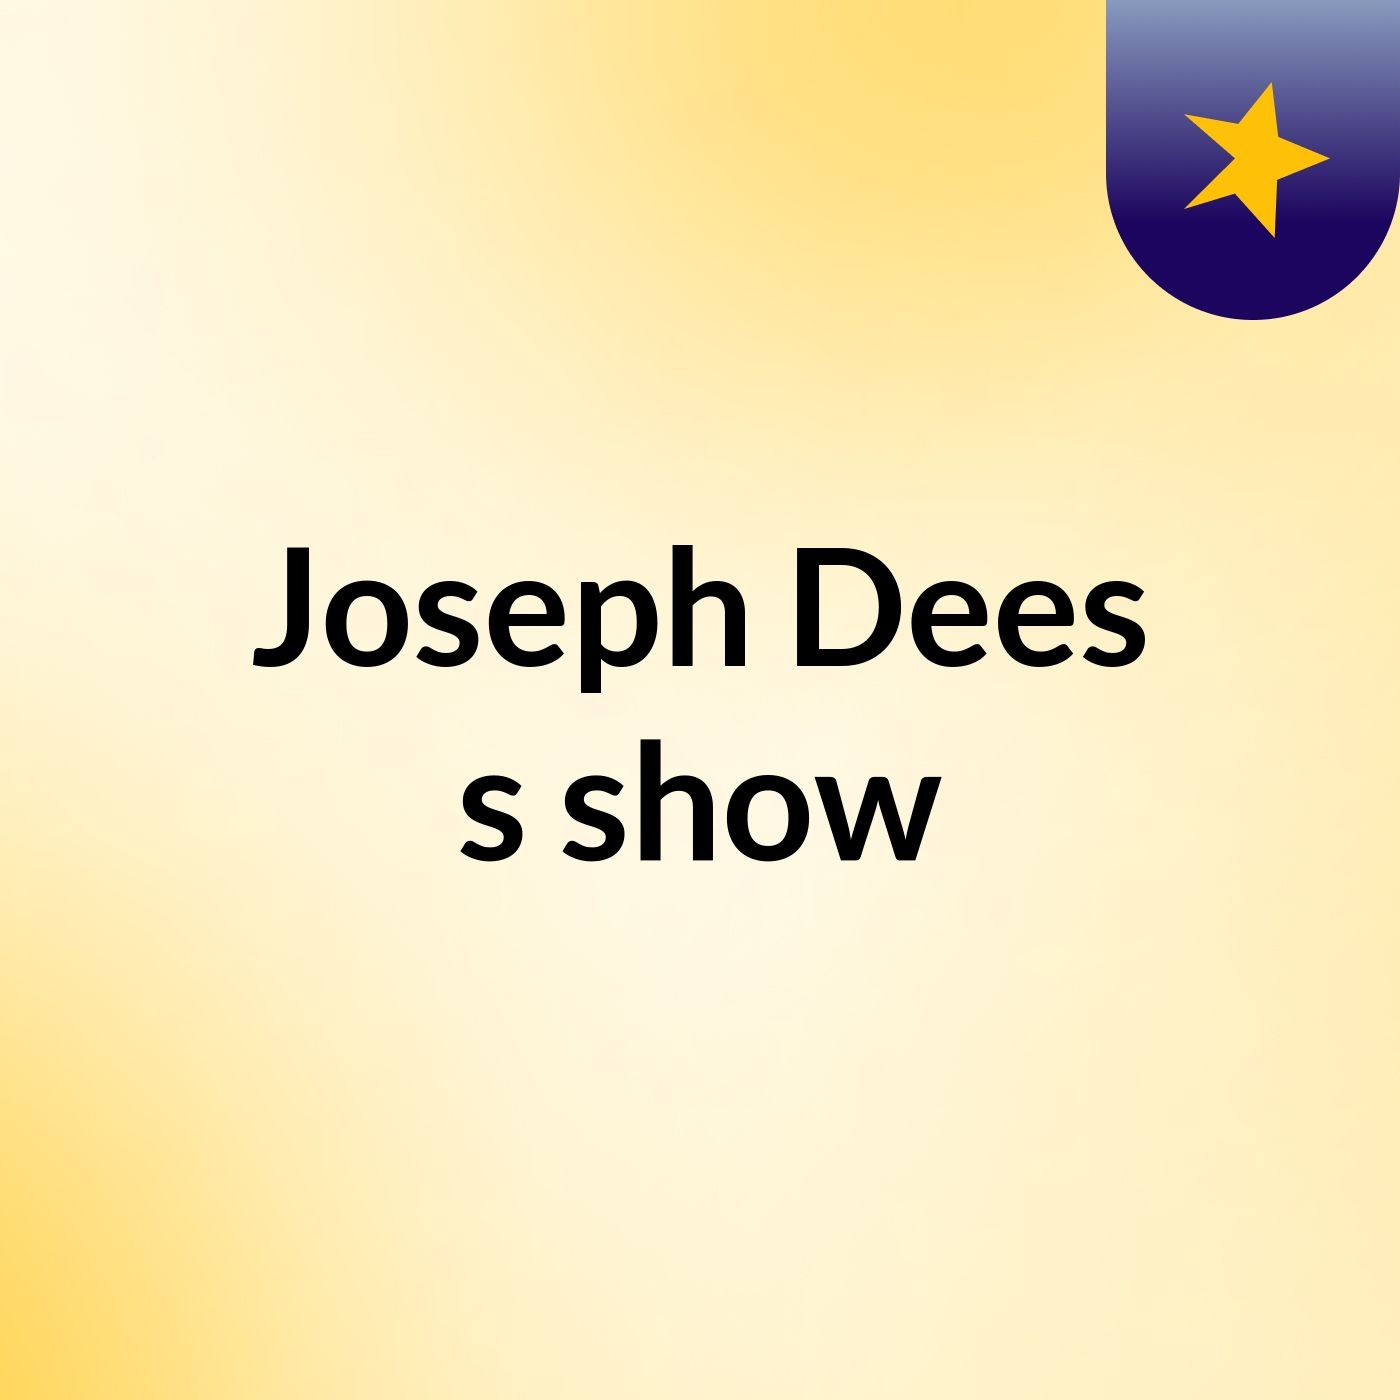 Joseph Dees's show